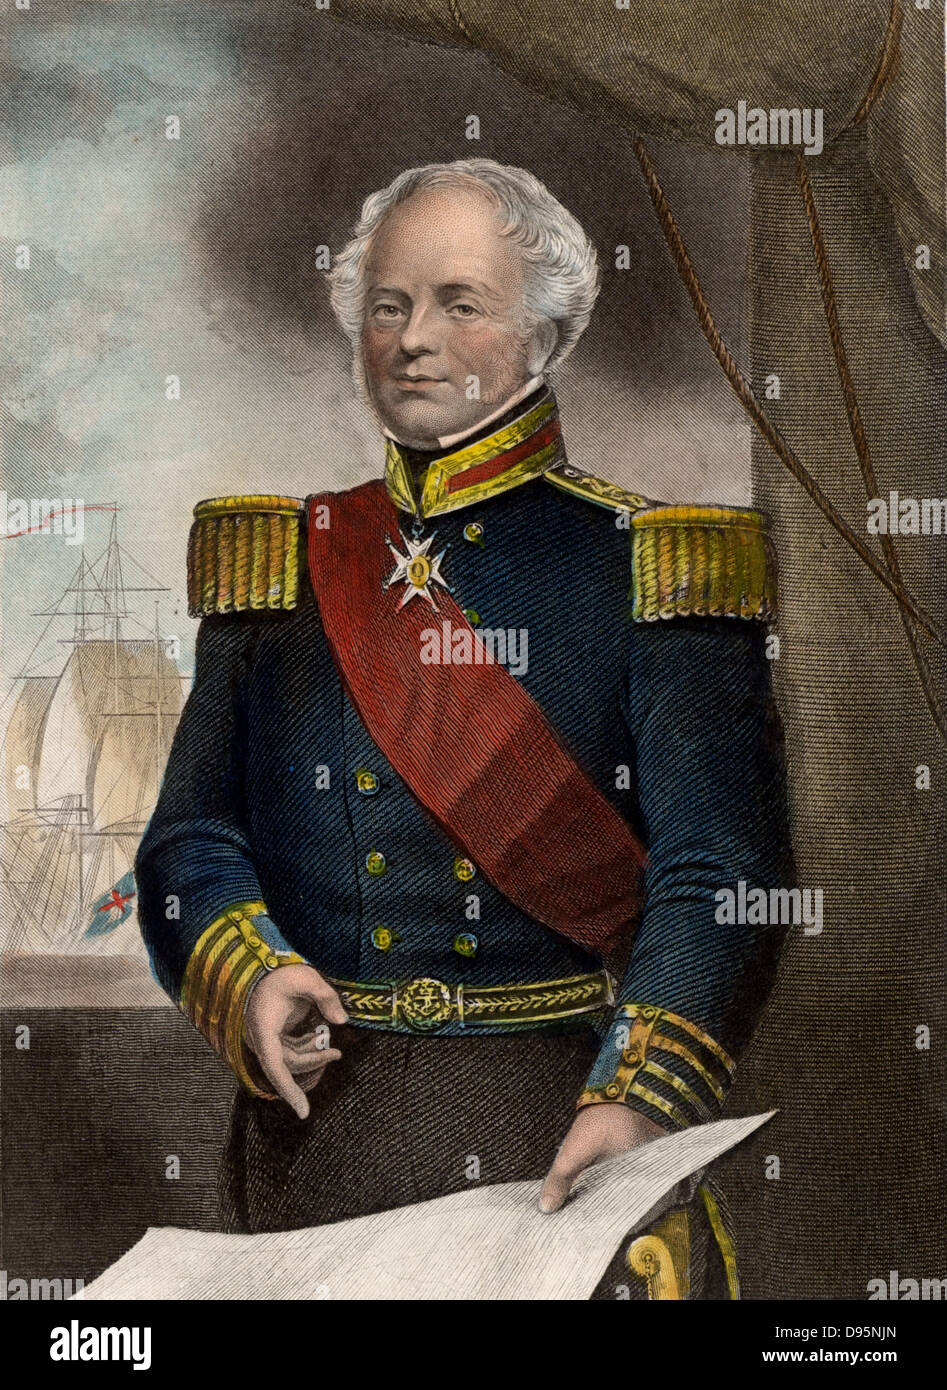 James Whitley Dekane Dundas (1785-1862) British Naval Commander. Die Royal Navy 1799 eingetragen. Vizeadmiral ernannt und Oberbefehlshaber der Mittelmeerflotte (1852-1855). Admiral 1857. Kupferstich c 1860. Stockfoto